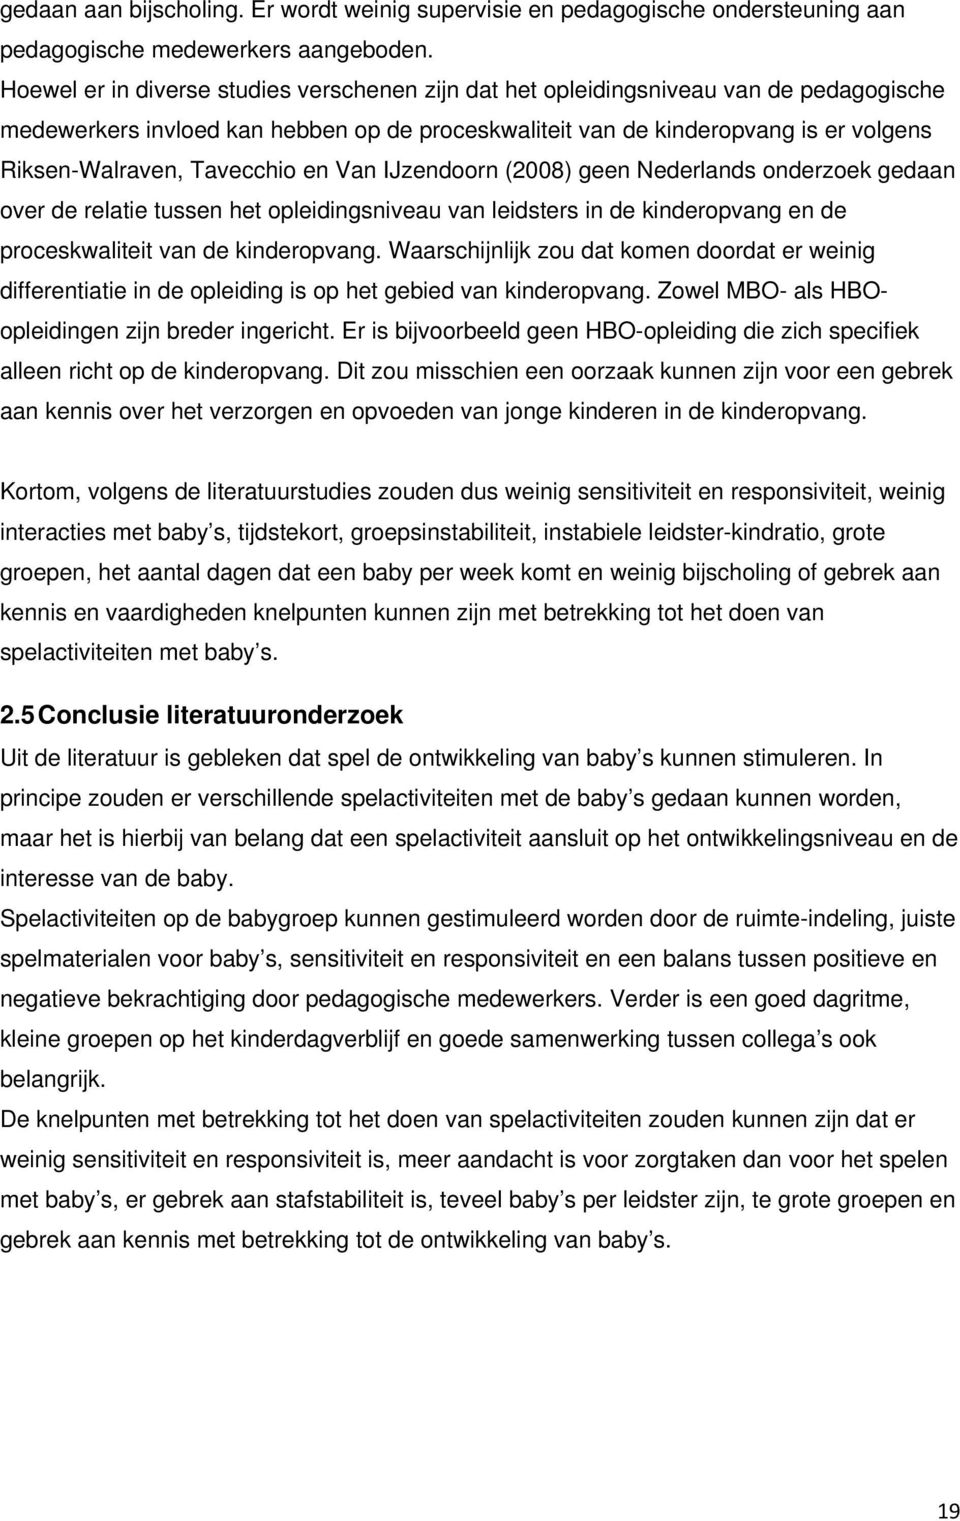 Tavecchio en Van IJzendoorn (2008) geen Nederlands onderzoek gedaan over de relatie tussen het opleidingsniveau van leidsters in de kinderopvang en de proceskwaliteit van de kinderopvang.